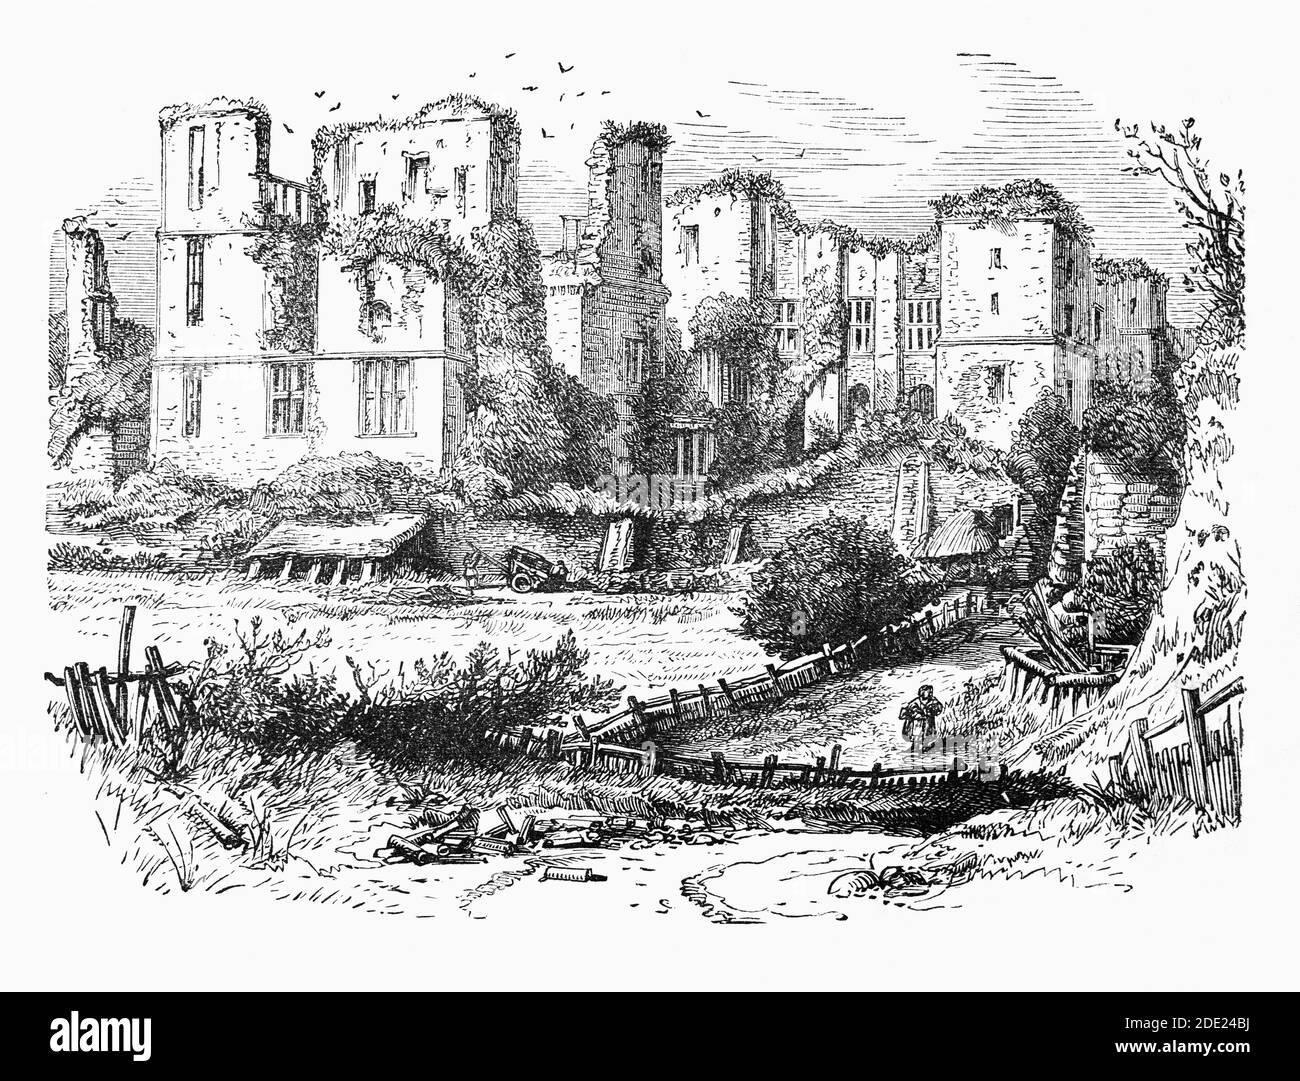 Eine Ansicht des Kenilworth Castle aus dem 19. Jahrhundert in Warwickshire, England. Über mehrere Jahrhunderte erbaut, wurde es in den 1120er Jahren um einen mächtigen normannischen großen Turm gegründet, der dann von König John zu Beginn des 13. Jahrhunderts erheblich erweitert wurde. Im späten 14. Jahrhundert verwandelte John von Gaunt die mittelalterliche Burg in eine Palastfestung, dann erweiterte der Graf von Leicester die Burg im 16. Jahrhundert, baute neue Tudor-Gebäude und nutzte das mittelalterliche Erbe Kenilworth, um einen modischen Renaissance-Palast zu produzieren. Stockfoto